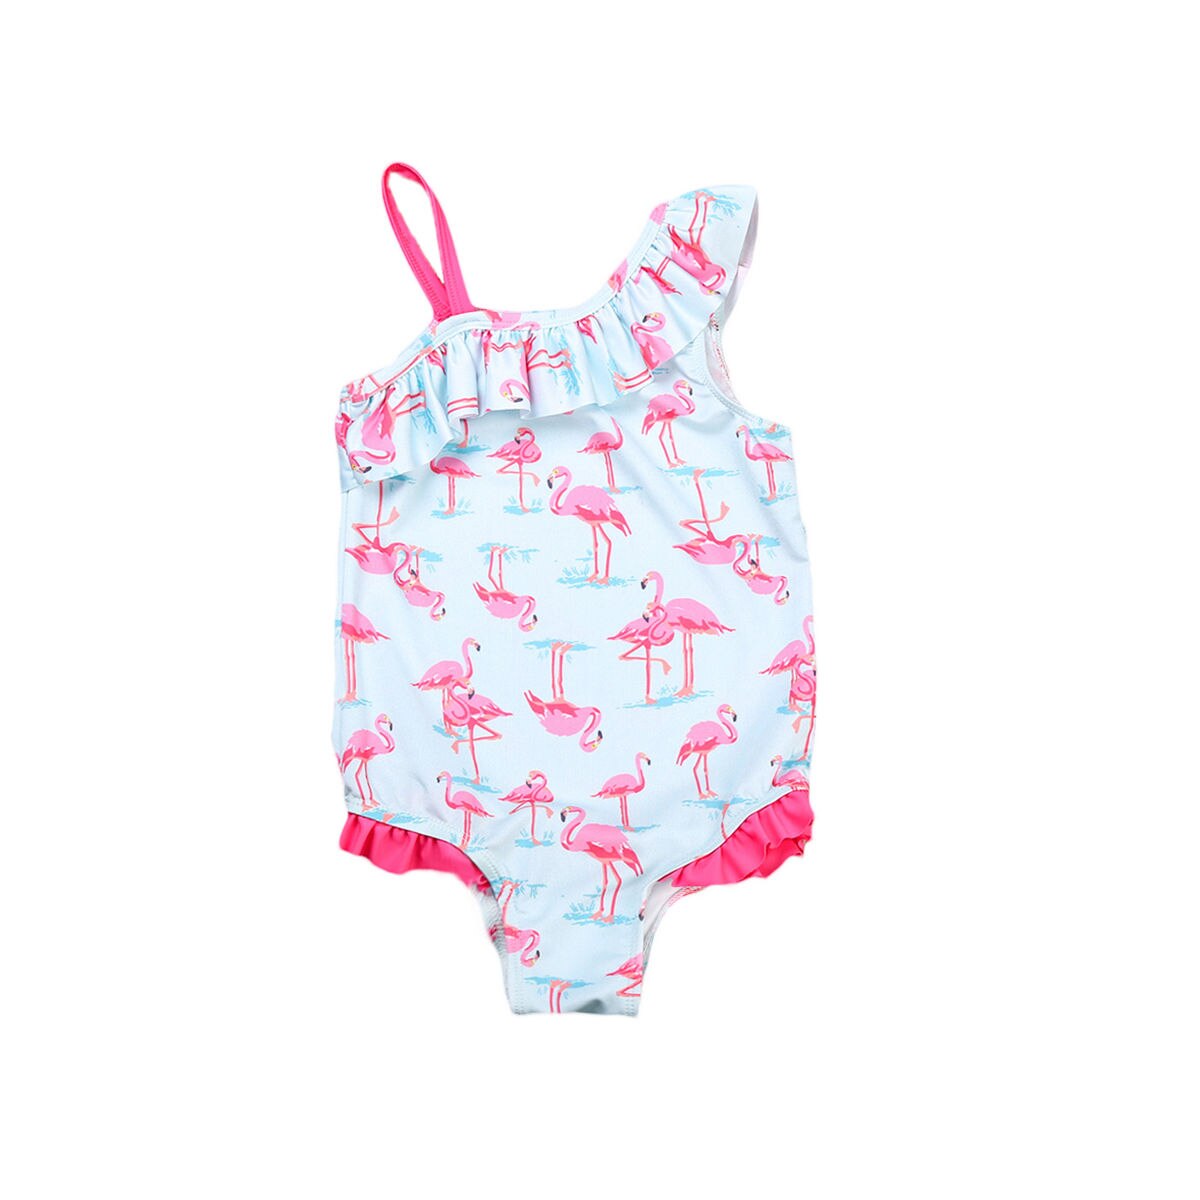 Baby piger kid flamingo badedragt badedragt badedragt ét stykke badetøj bikini sæt svømning badning strand badetøj